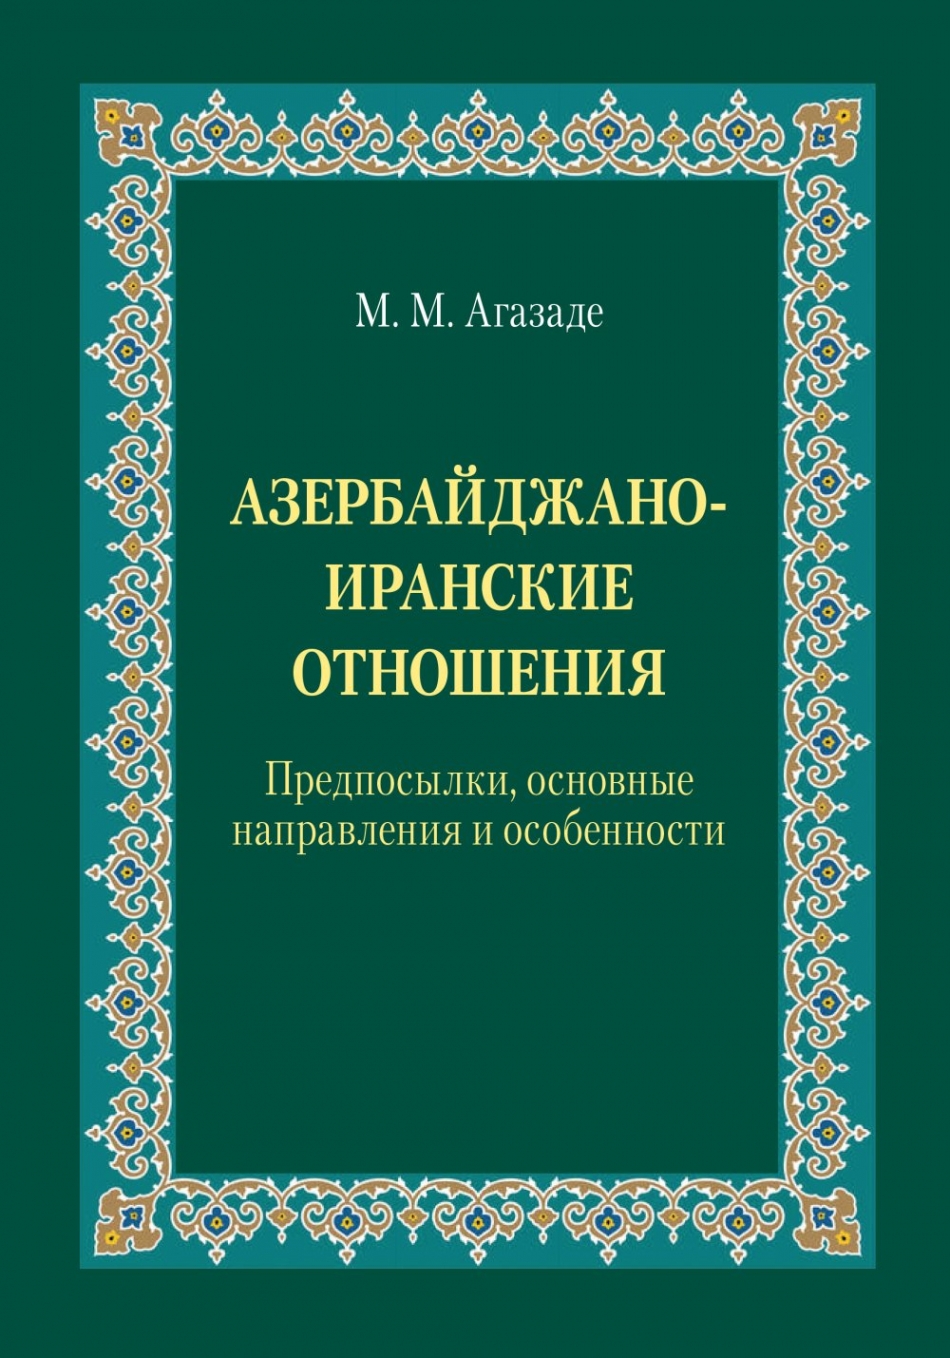 Агазаде М.М. Азербайджано-иранские отношения: Предпосылки, основные направления и особенности 